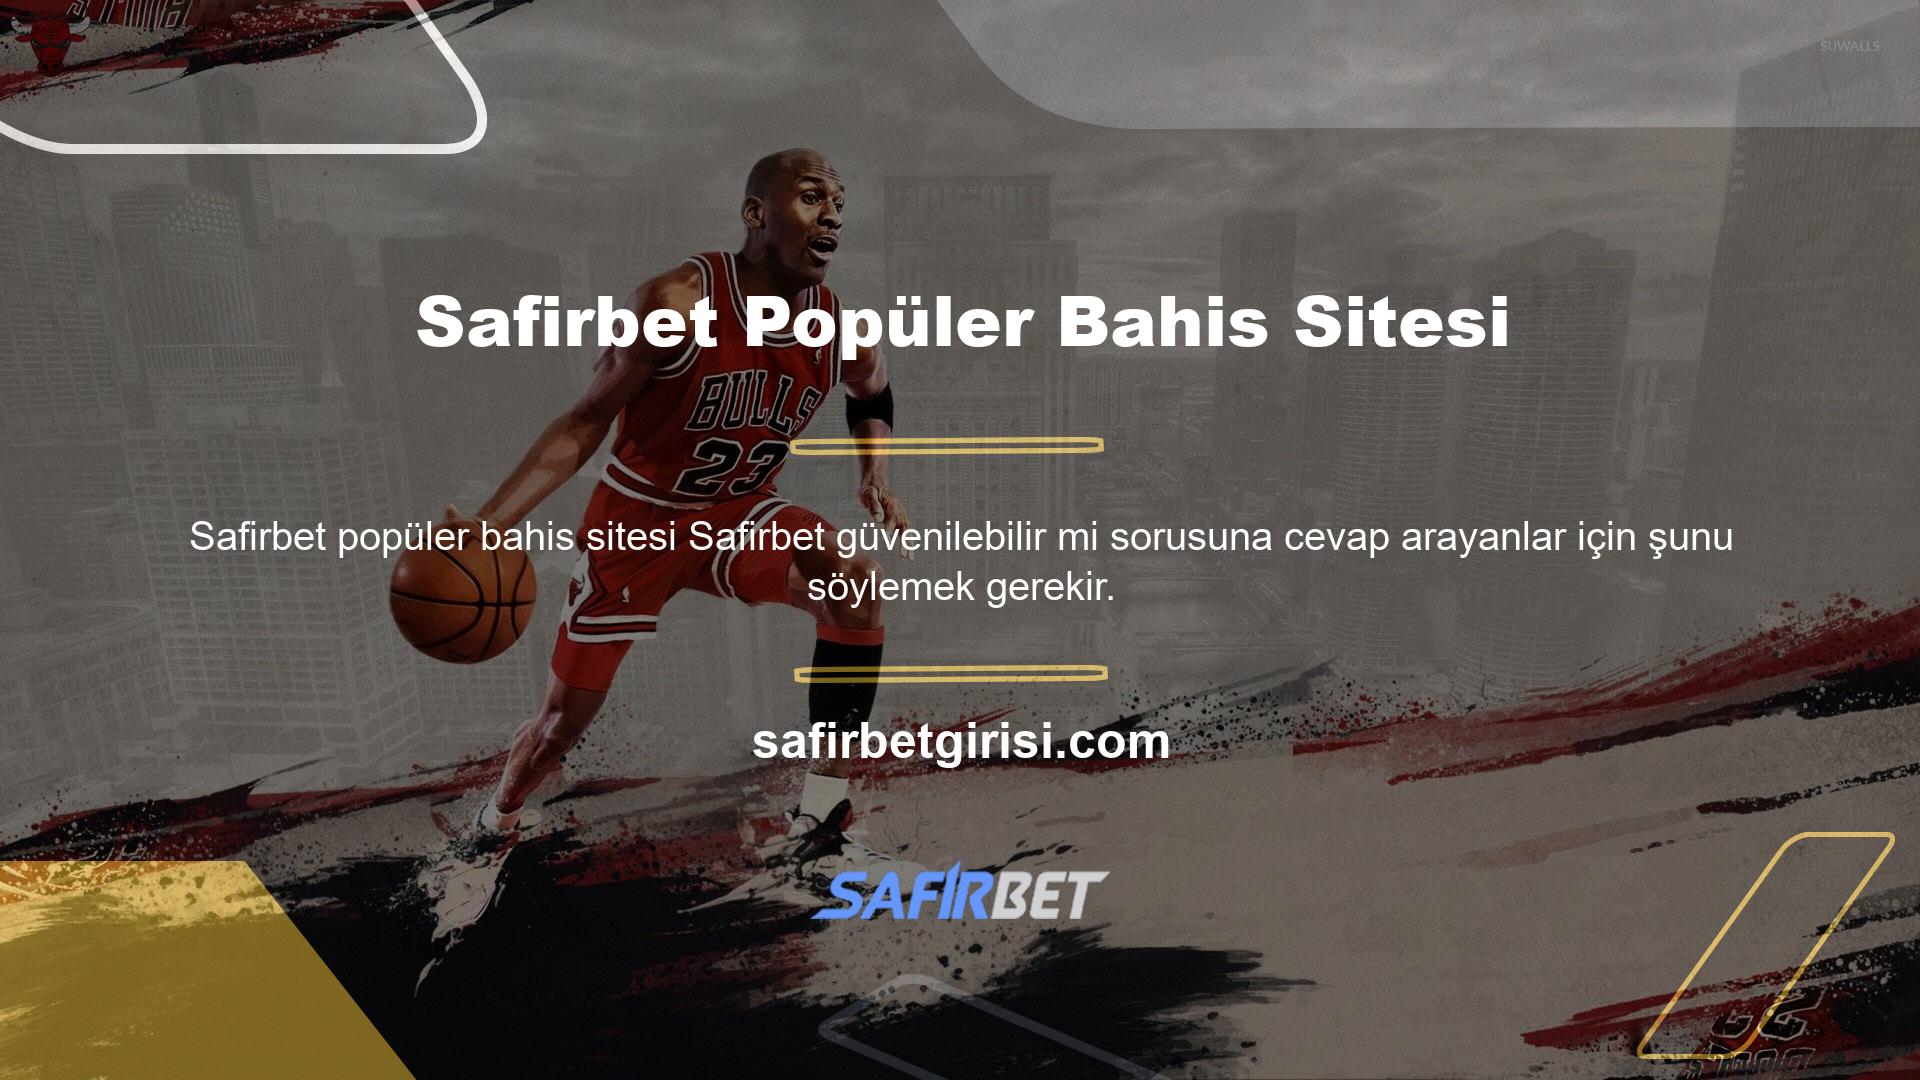 Safirbet Casino ve Oyunlar sitesi en popüler bahis sitelerinden biri olmasa da yeni ve güvenilirdir